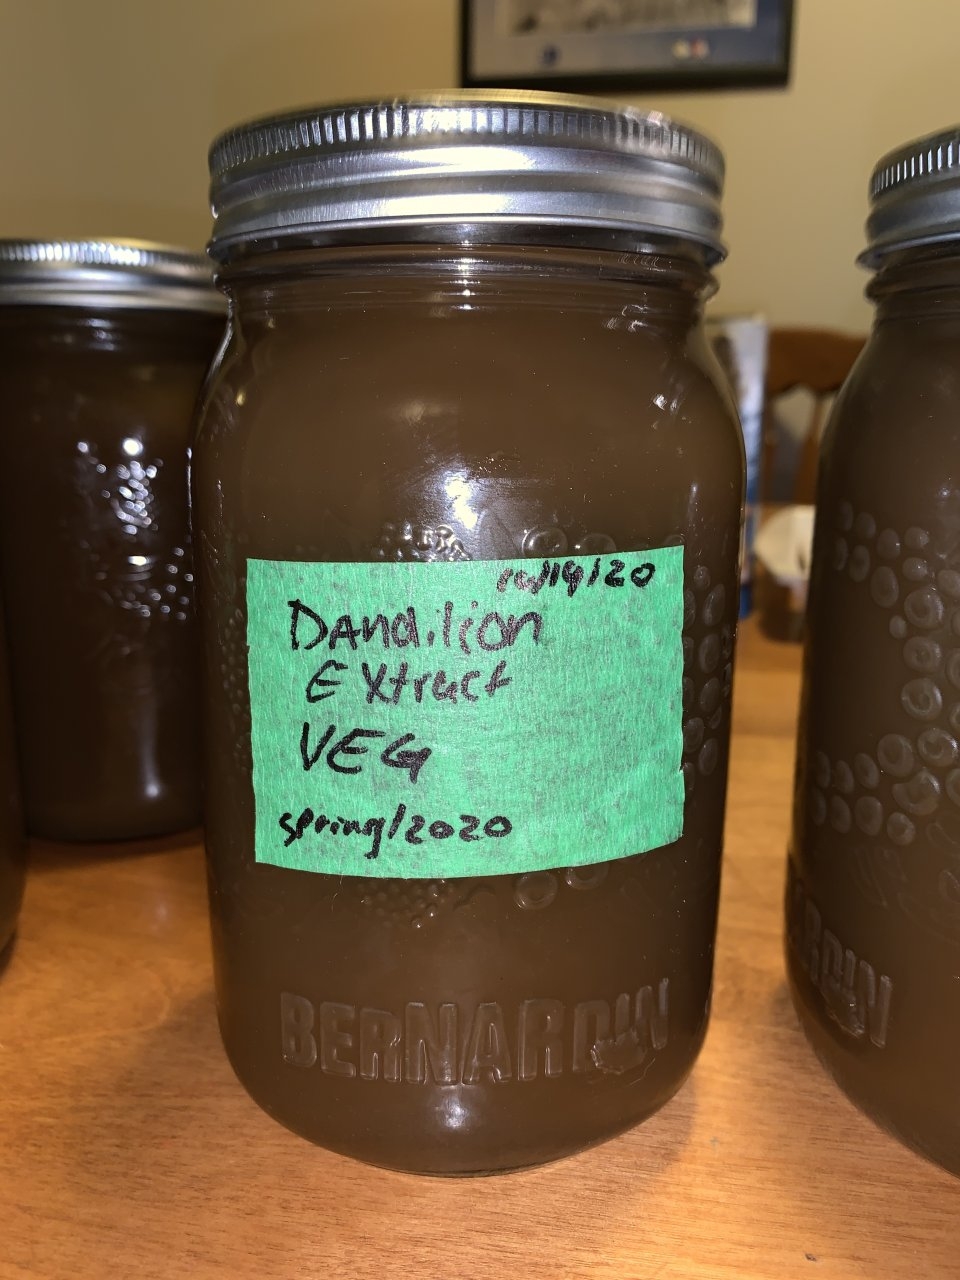 Fermented dandelion VEG